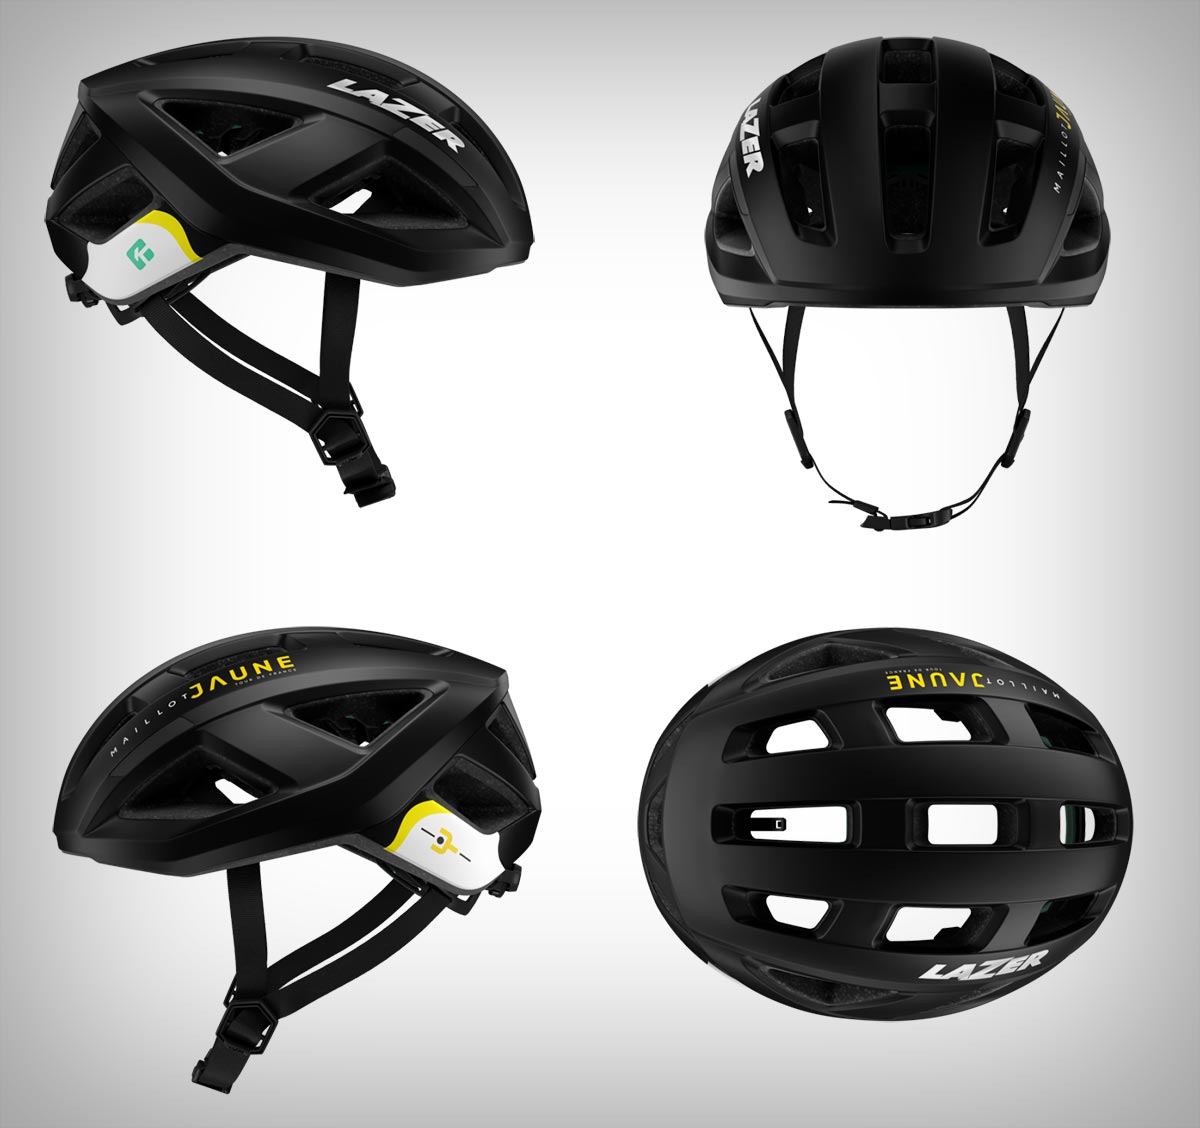 Lazer presenta tres ediciones especiales de cascos inspirados en el Tour de Francia y en el emblemático maillot amarillo